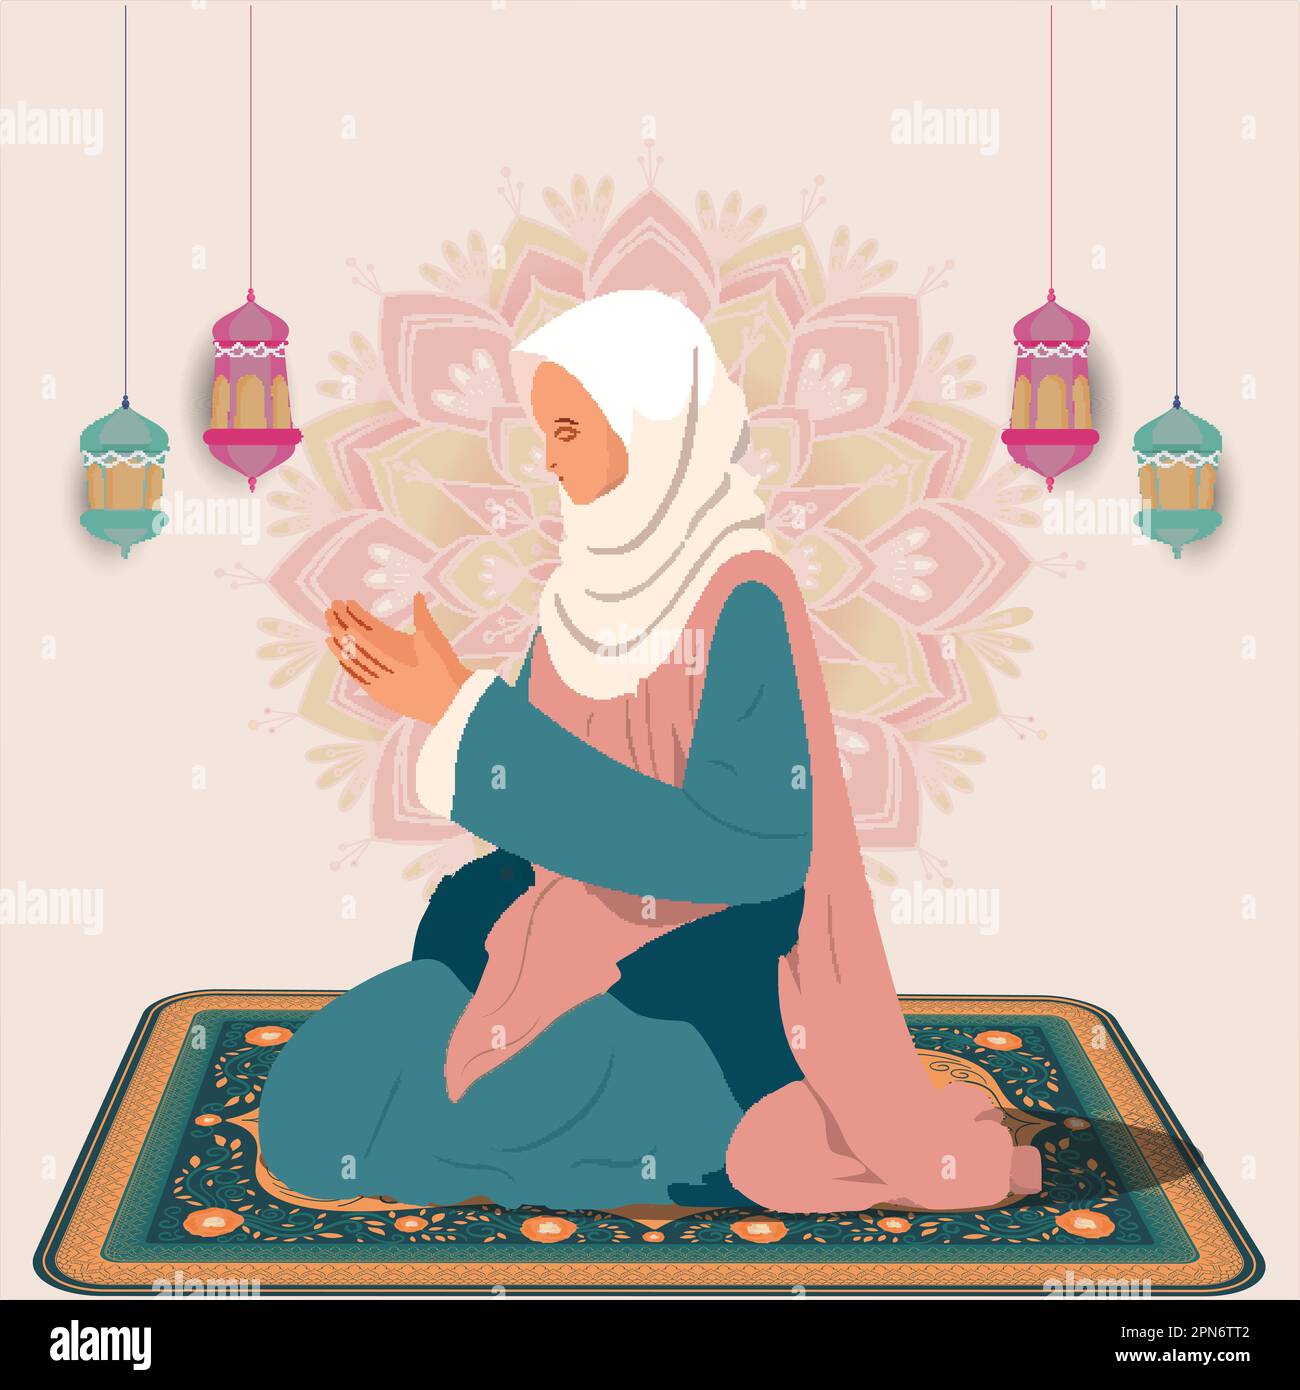 Personnage de femme musulmane offrant Namaz (prière) sur Mat et lampes arabes suspendues décorées Mandala fond rose. Illustration de Vecteur